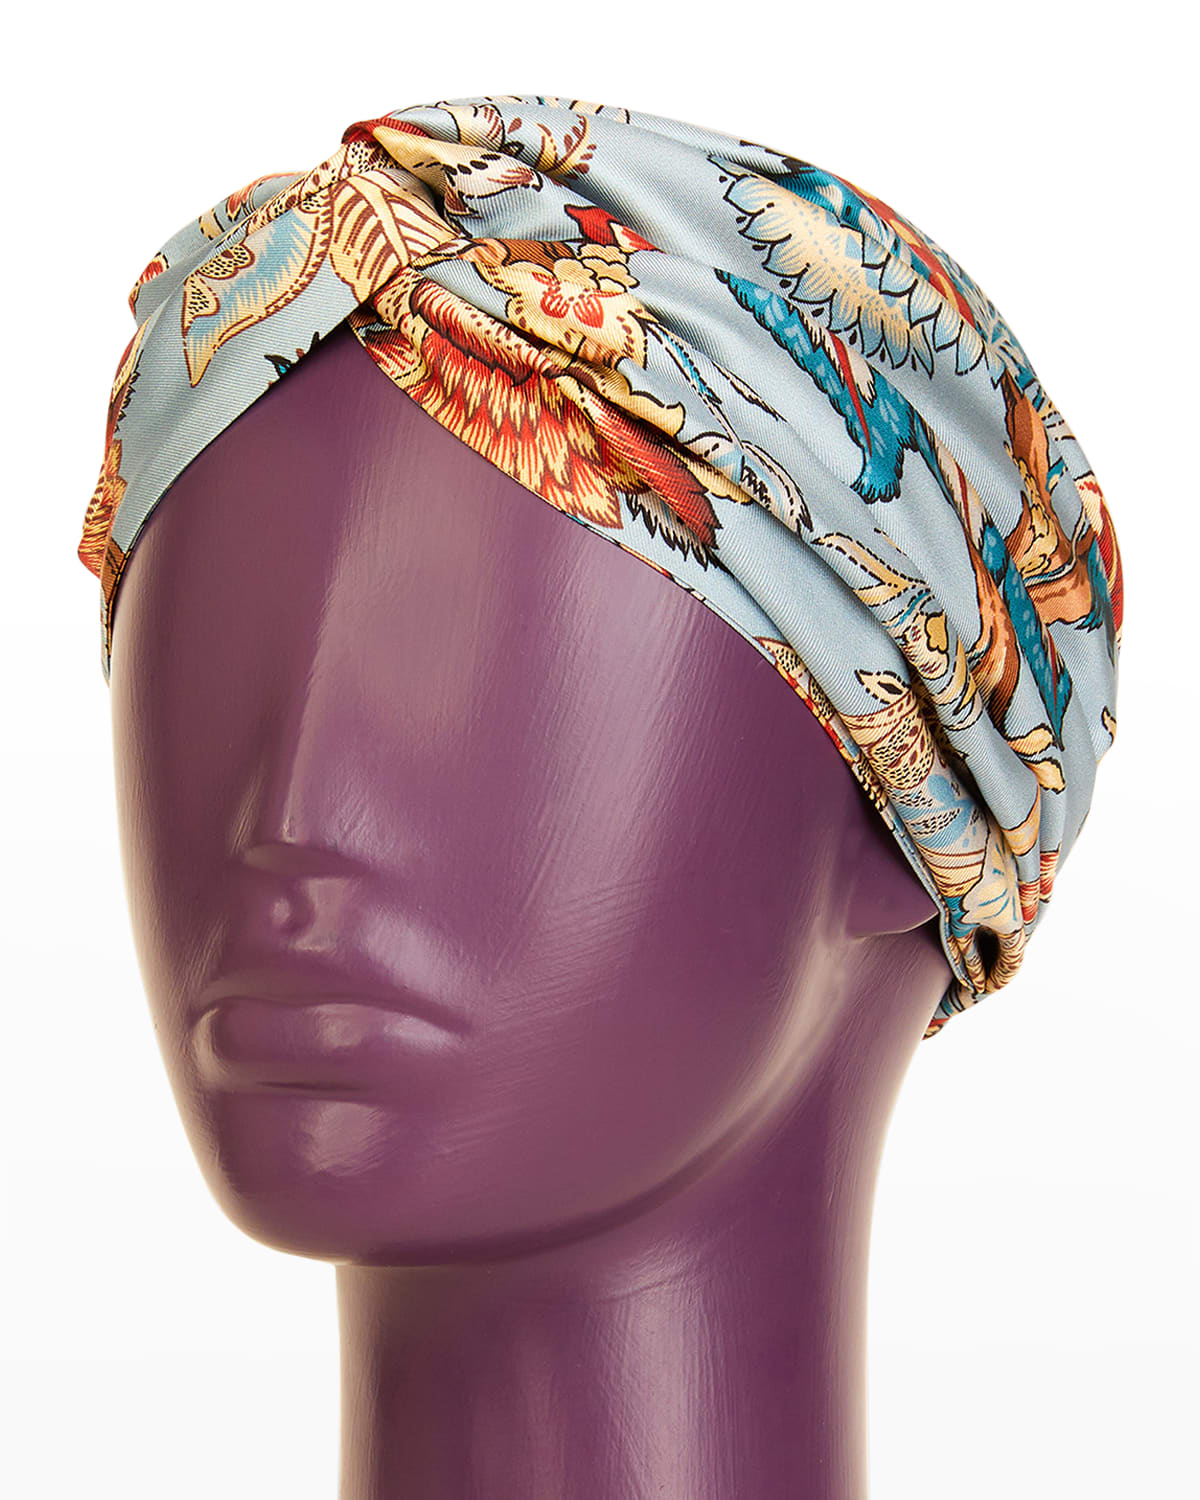 Wearable Art Women's Organic Cotton Headwrap Tropical Fuchsia Floral Print Hair Wrap Turban Hat